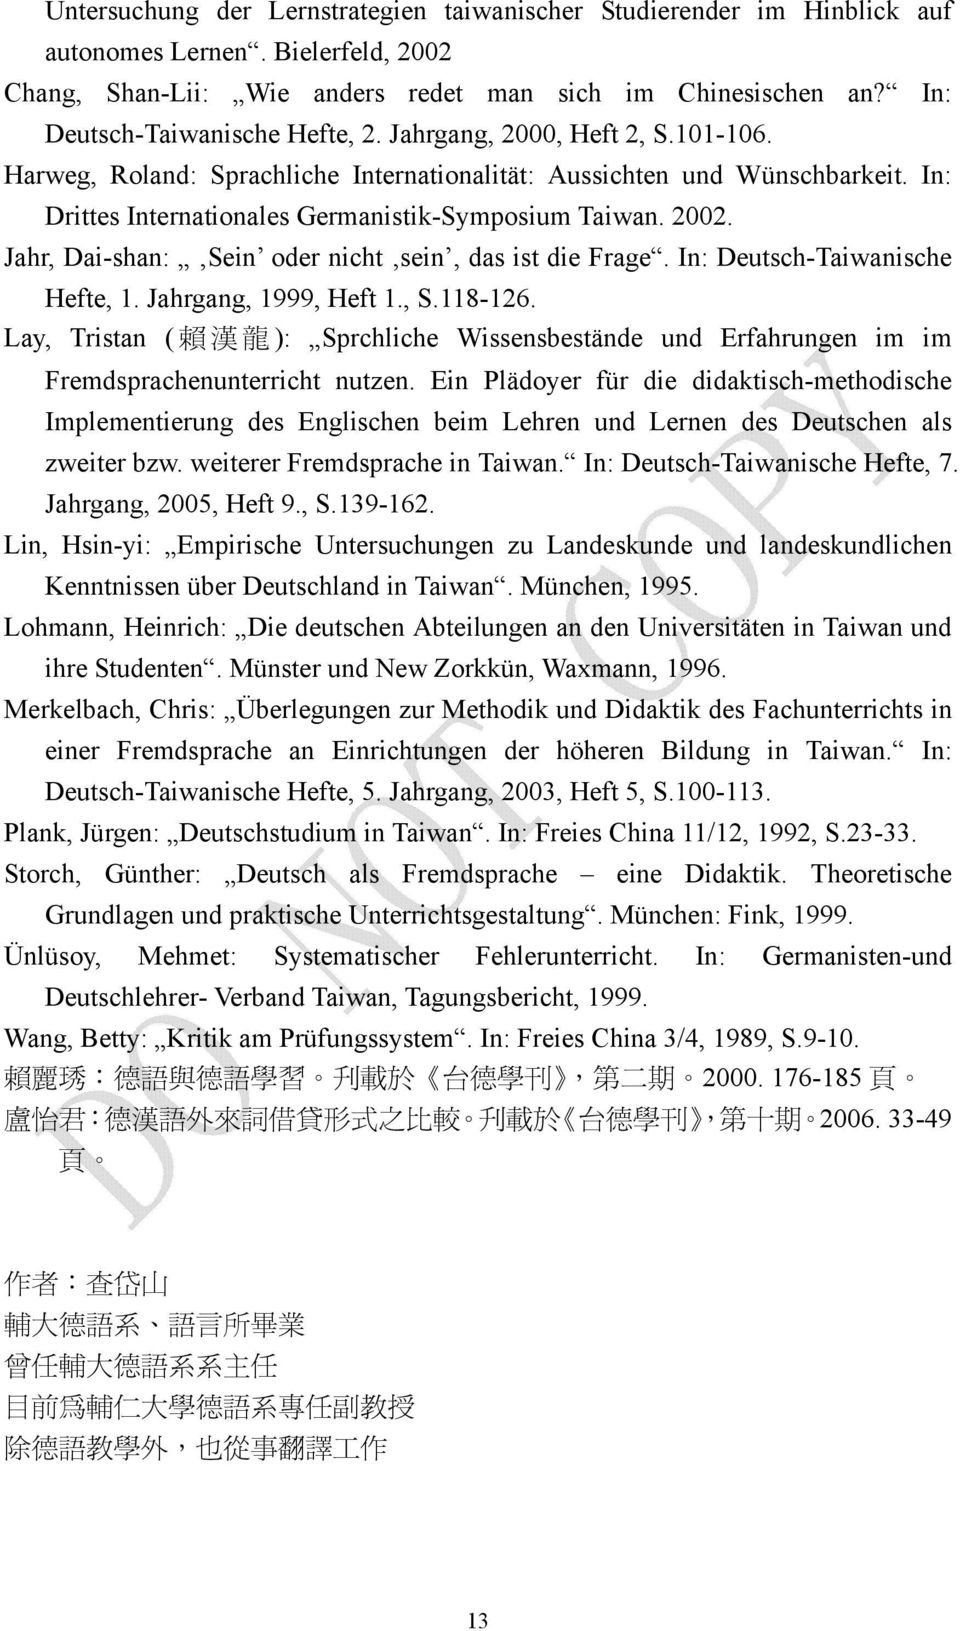 In: Drittes Internationales Germanistik-Symposium Taiwan. 2002. Jahr, Dai-shan: Sein oder nicht sein, das ist die Frage. In: Deutsch-Taiwanische Hefte, 1. Jahrgang, 1999, Heft 1., S.118-126.